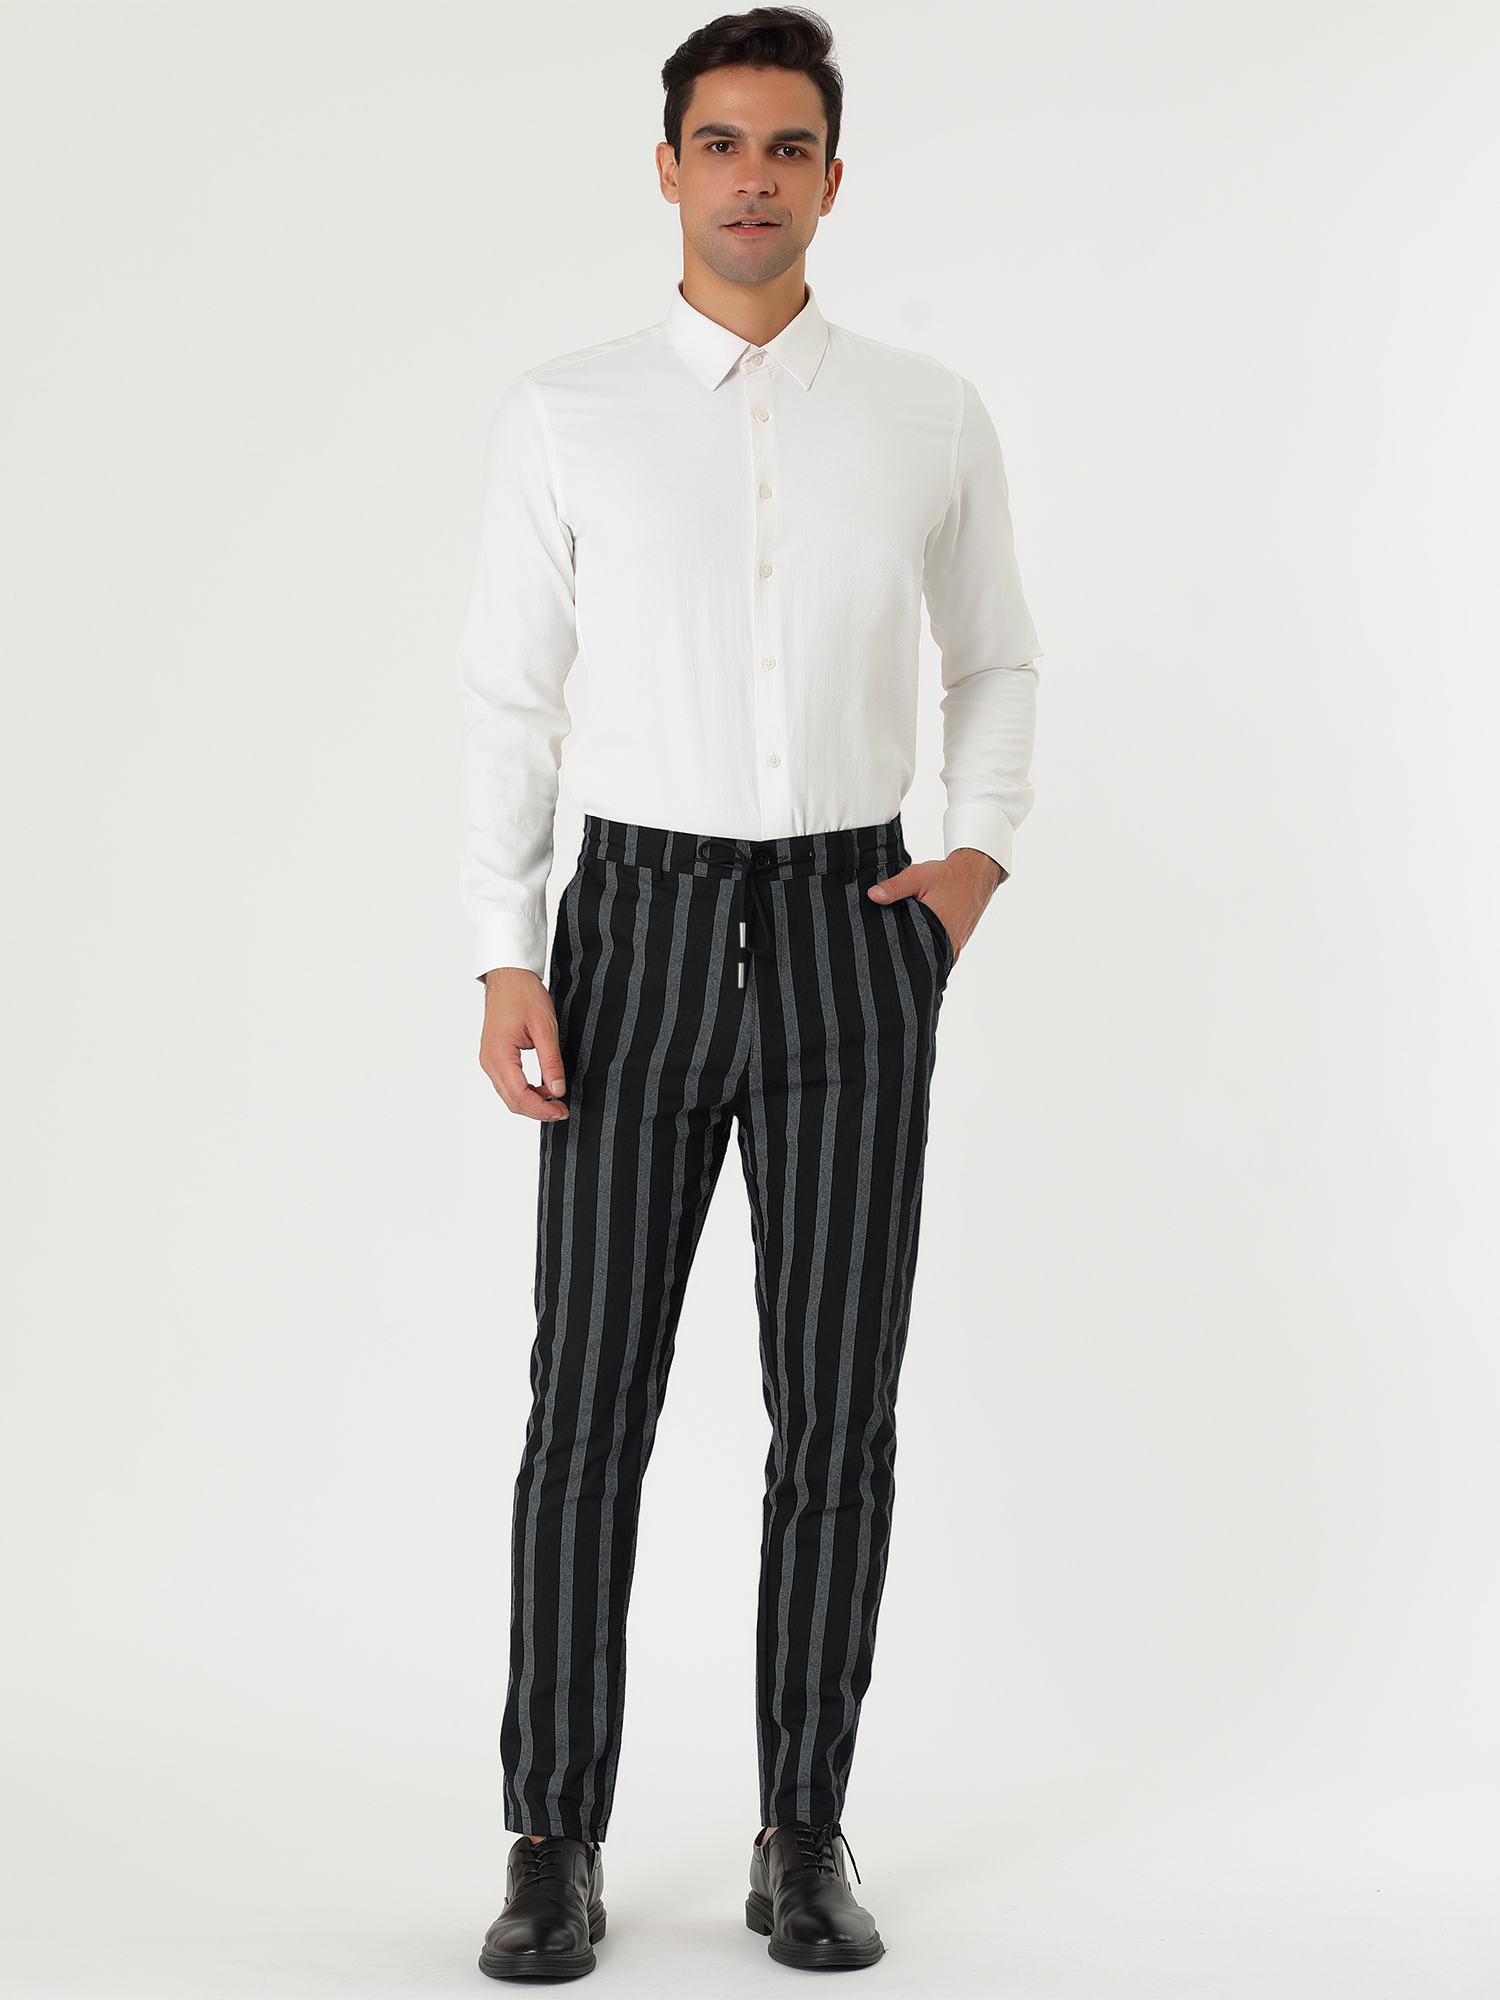 Unique Bargains Lars Amadeus Men's Striped Dress Pants Contrast Color Trousers